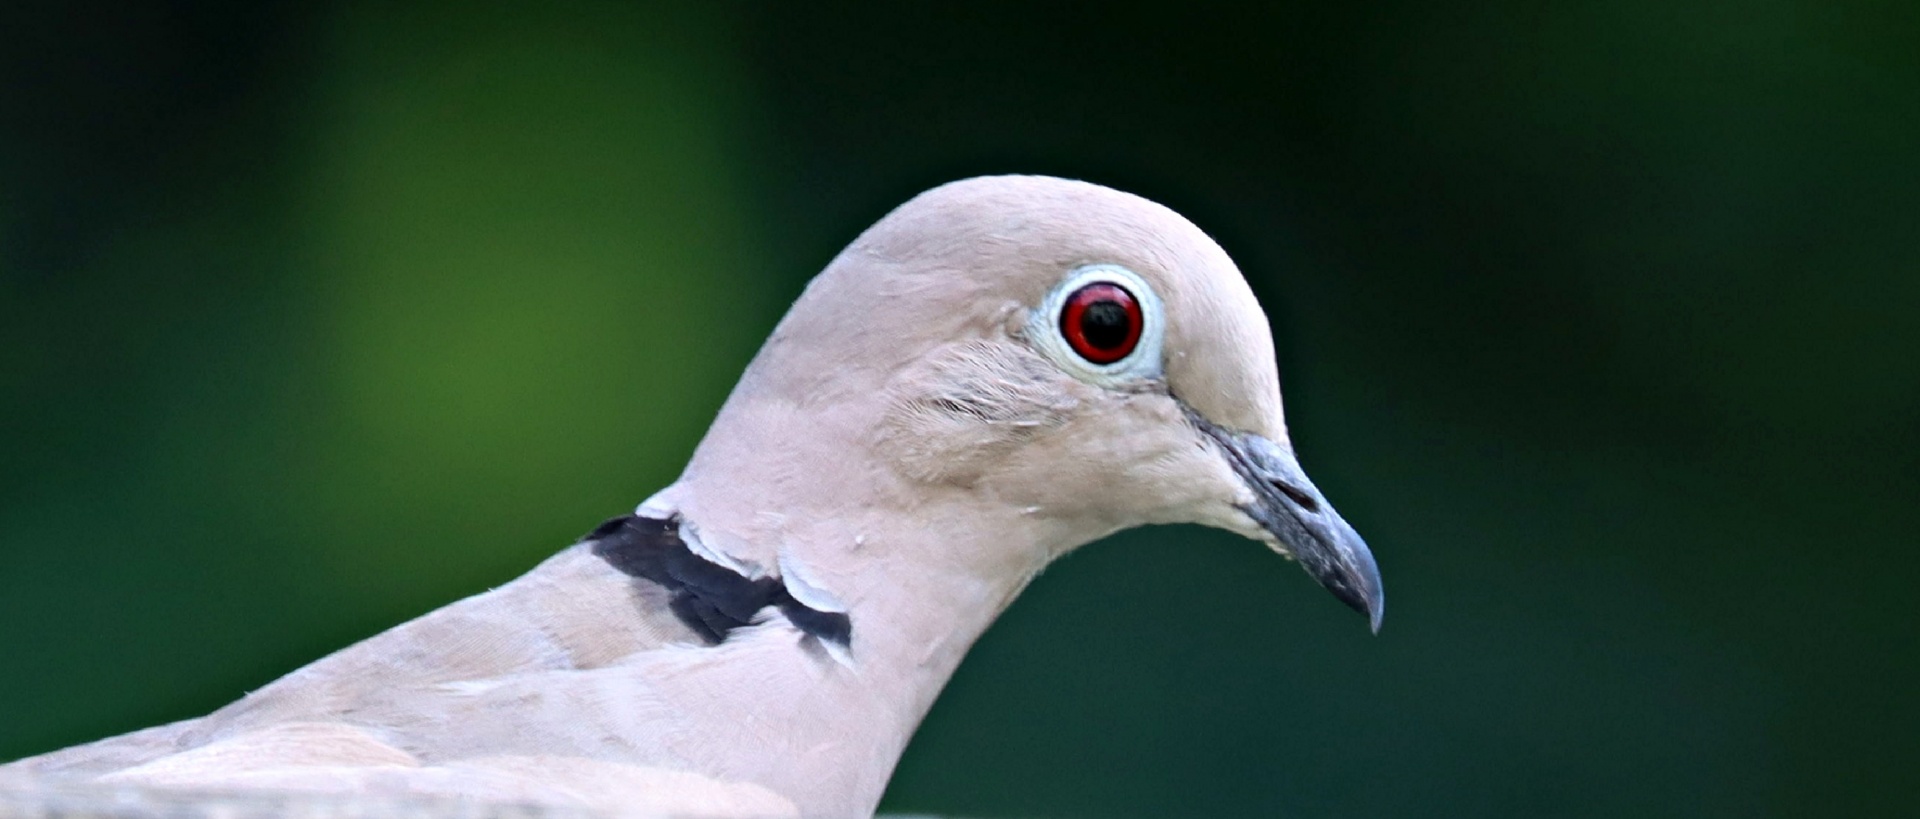 Head of collared dove